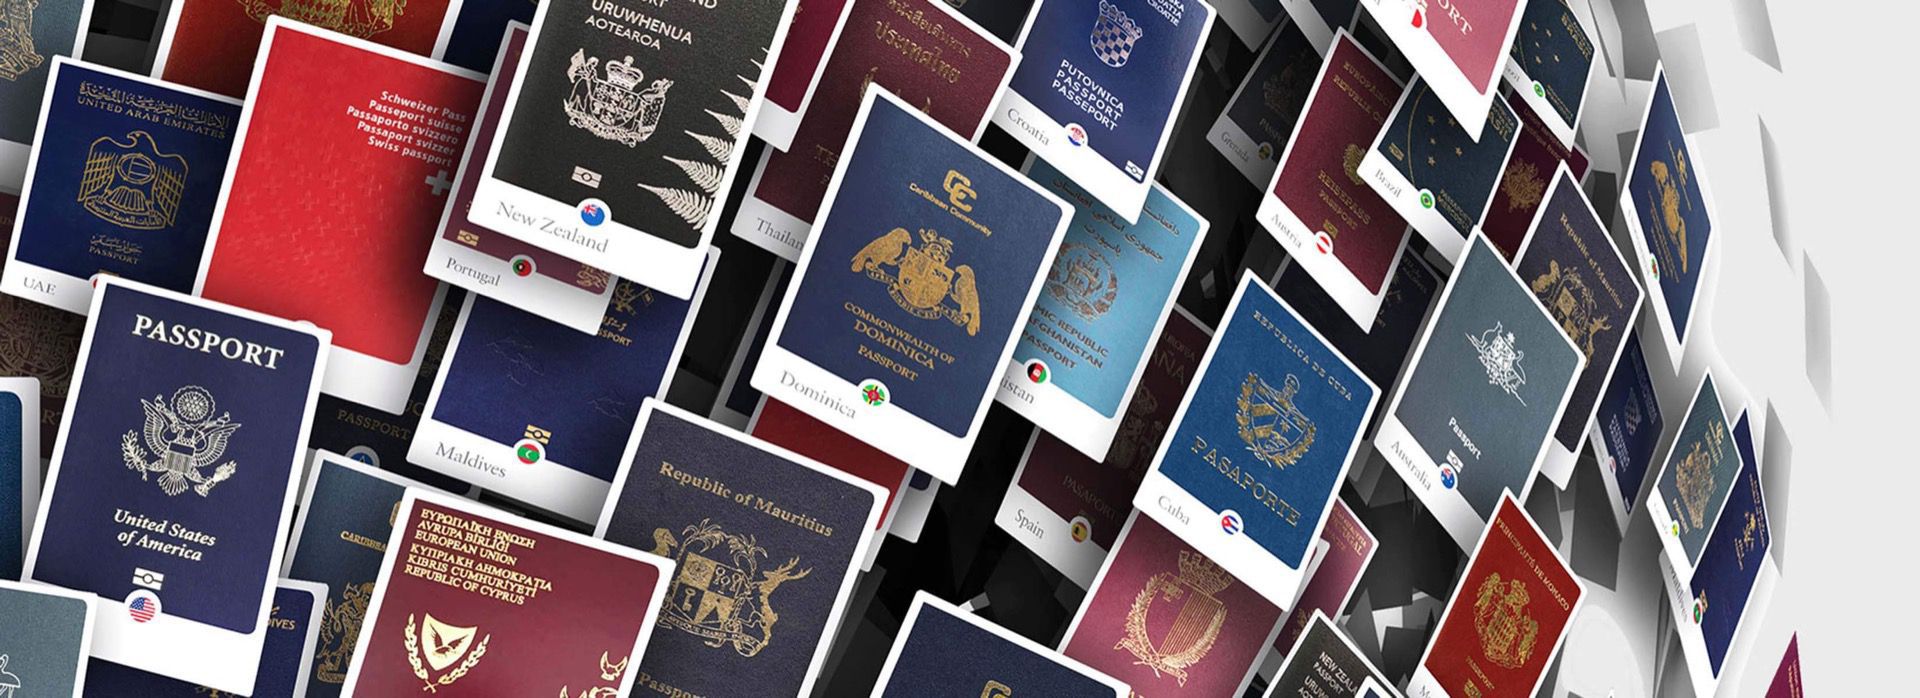 The Henley Passport Index